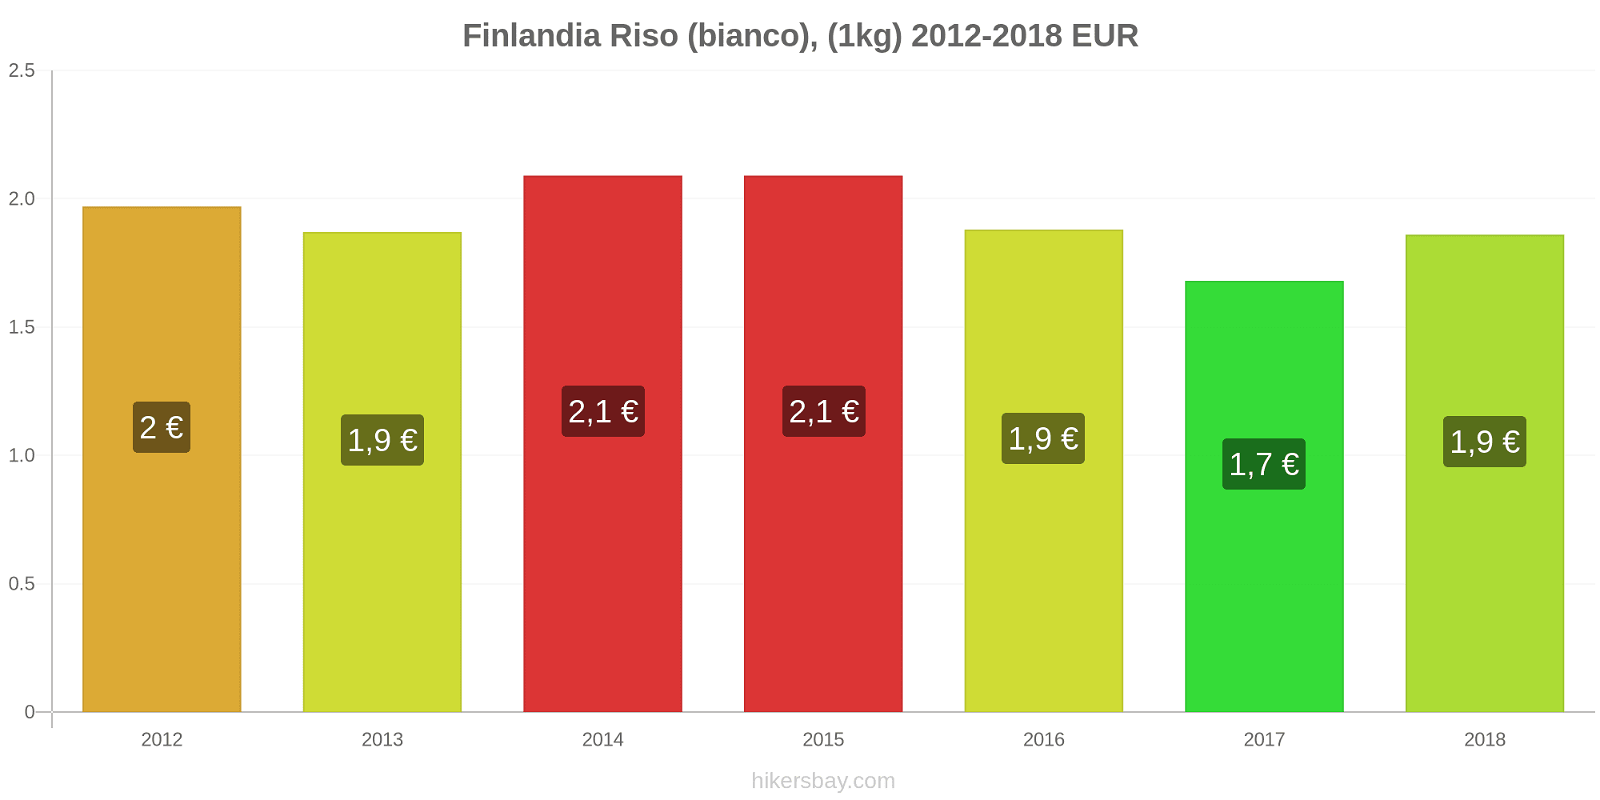 Finlandia cambi di prezzo Chilo di riso bianco hikersbay.com